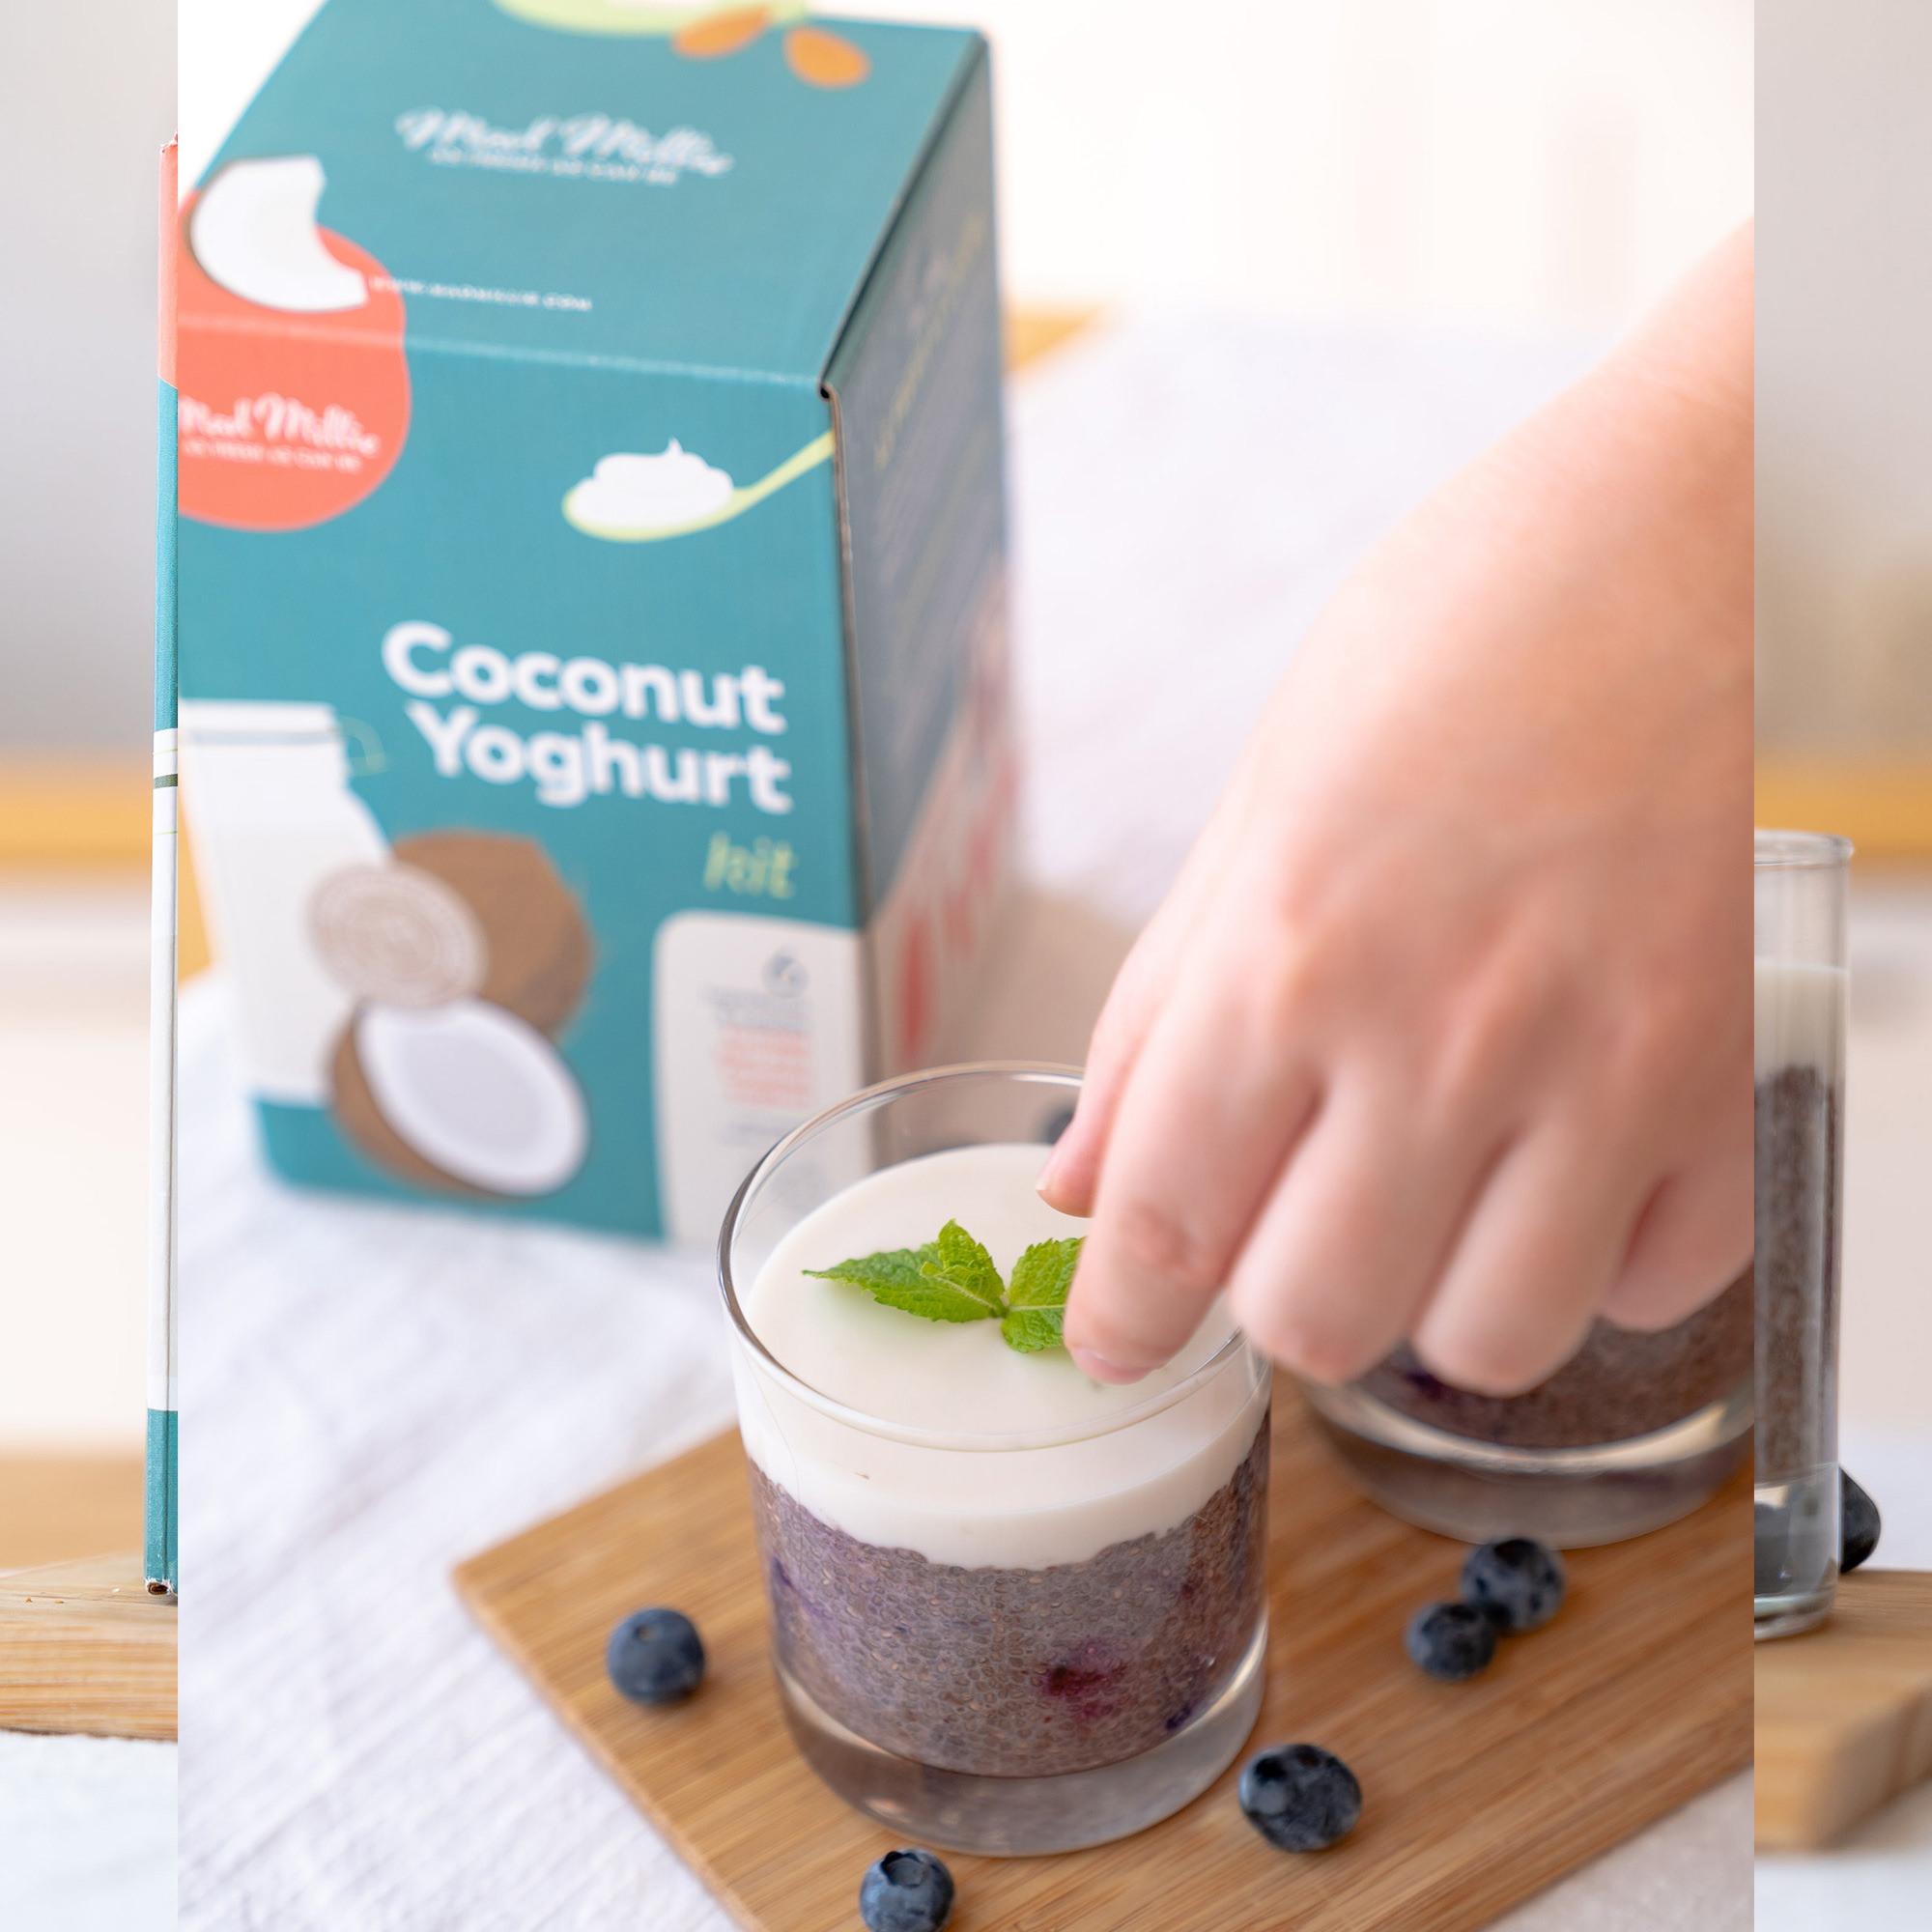 Mad Millie Coconut Yoghurt Kit Image 5